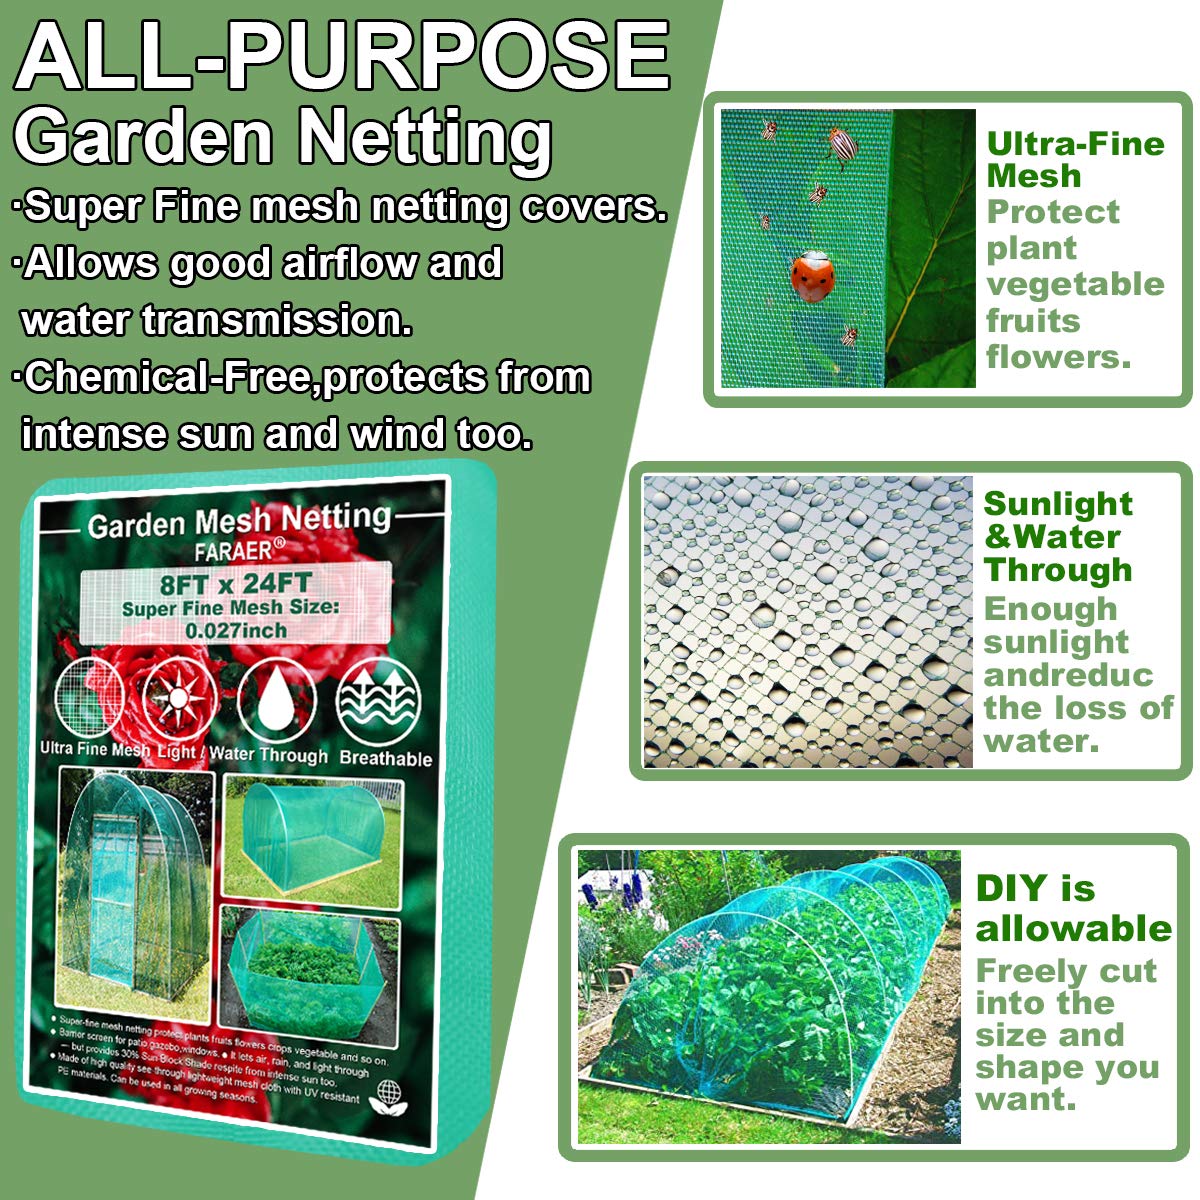 Faraer Garden Barrier Netting, Plant Covers 8x24ft Extra Fine Mesh 30% Sun Net Green Sunblock Mesh Shade Protection Netting for Vegetab